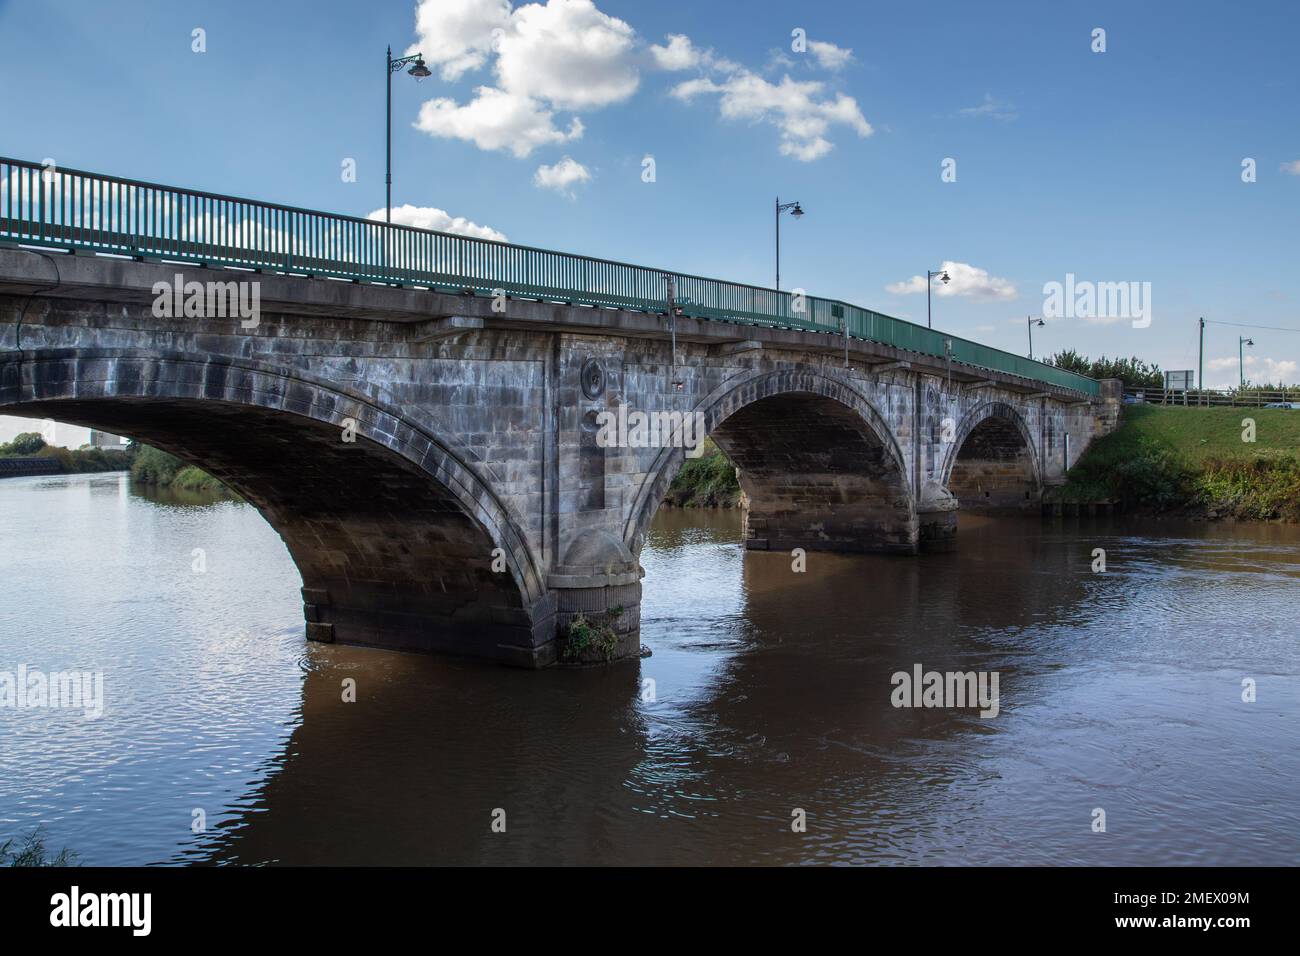 Blick auf die Trent Bridge, die den Fluss Trent in Gainsborough, Lincolnshire, überspannt. Der Fluss Trent ist der drittlängste Fluss in Großbritannien. Stockfoto